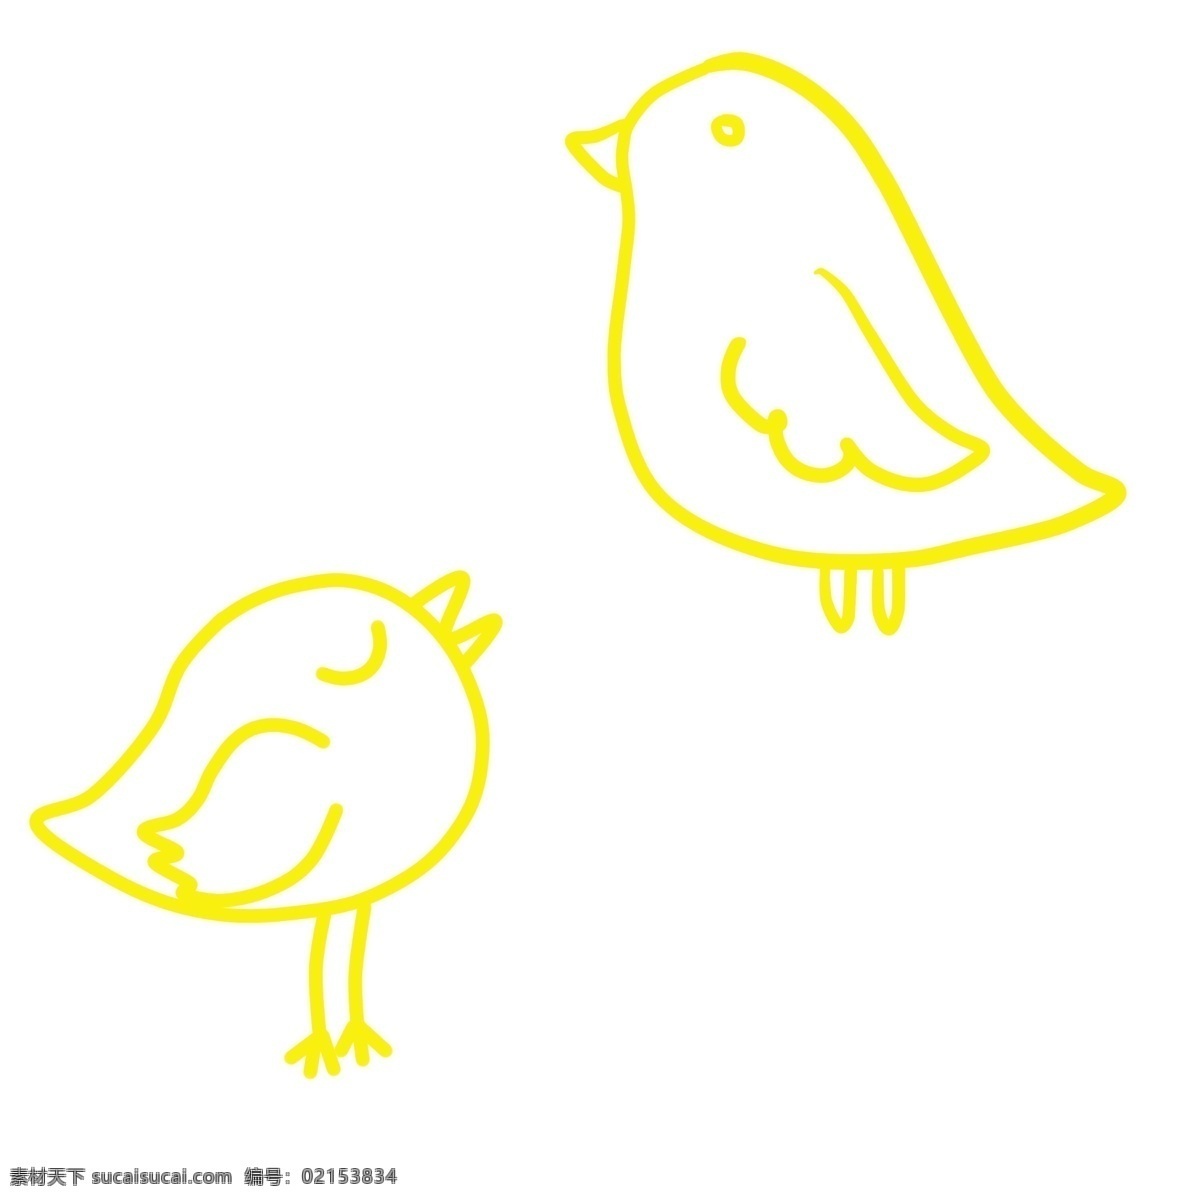 卡通 可爱 黄色 小鸟 卡通的小鸟 可爱的小鸟 图形的小鸟 黄色的小鸟 简约图形 简笔小鸟 简单的小鸟